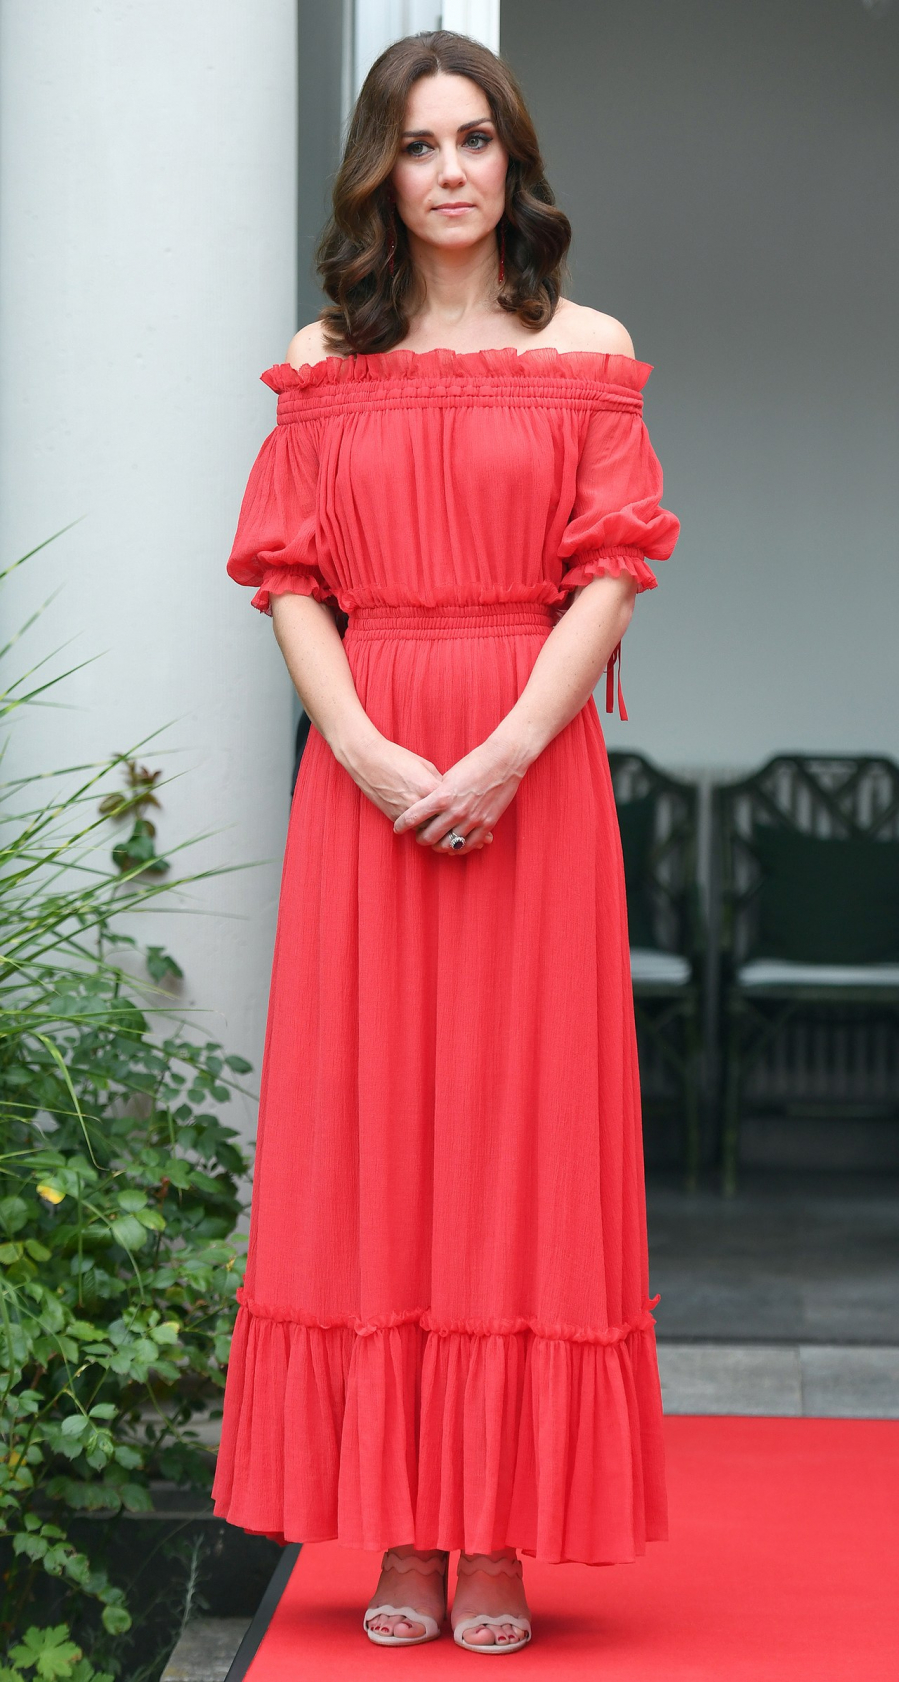 Công nương lựa chọn mẫu váy maxi khoe vai trần với tông màu đỏ hồng làm điểm nhấn trong buổi đón tiếp tại Berlin, Đức. Được biết, đây là thiết kế của Alexander McQueen có trị giá 2877 đô la Mỹ (khoảng 66 triệu đồng)